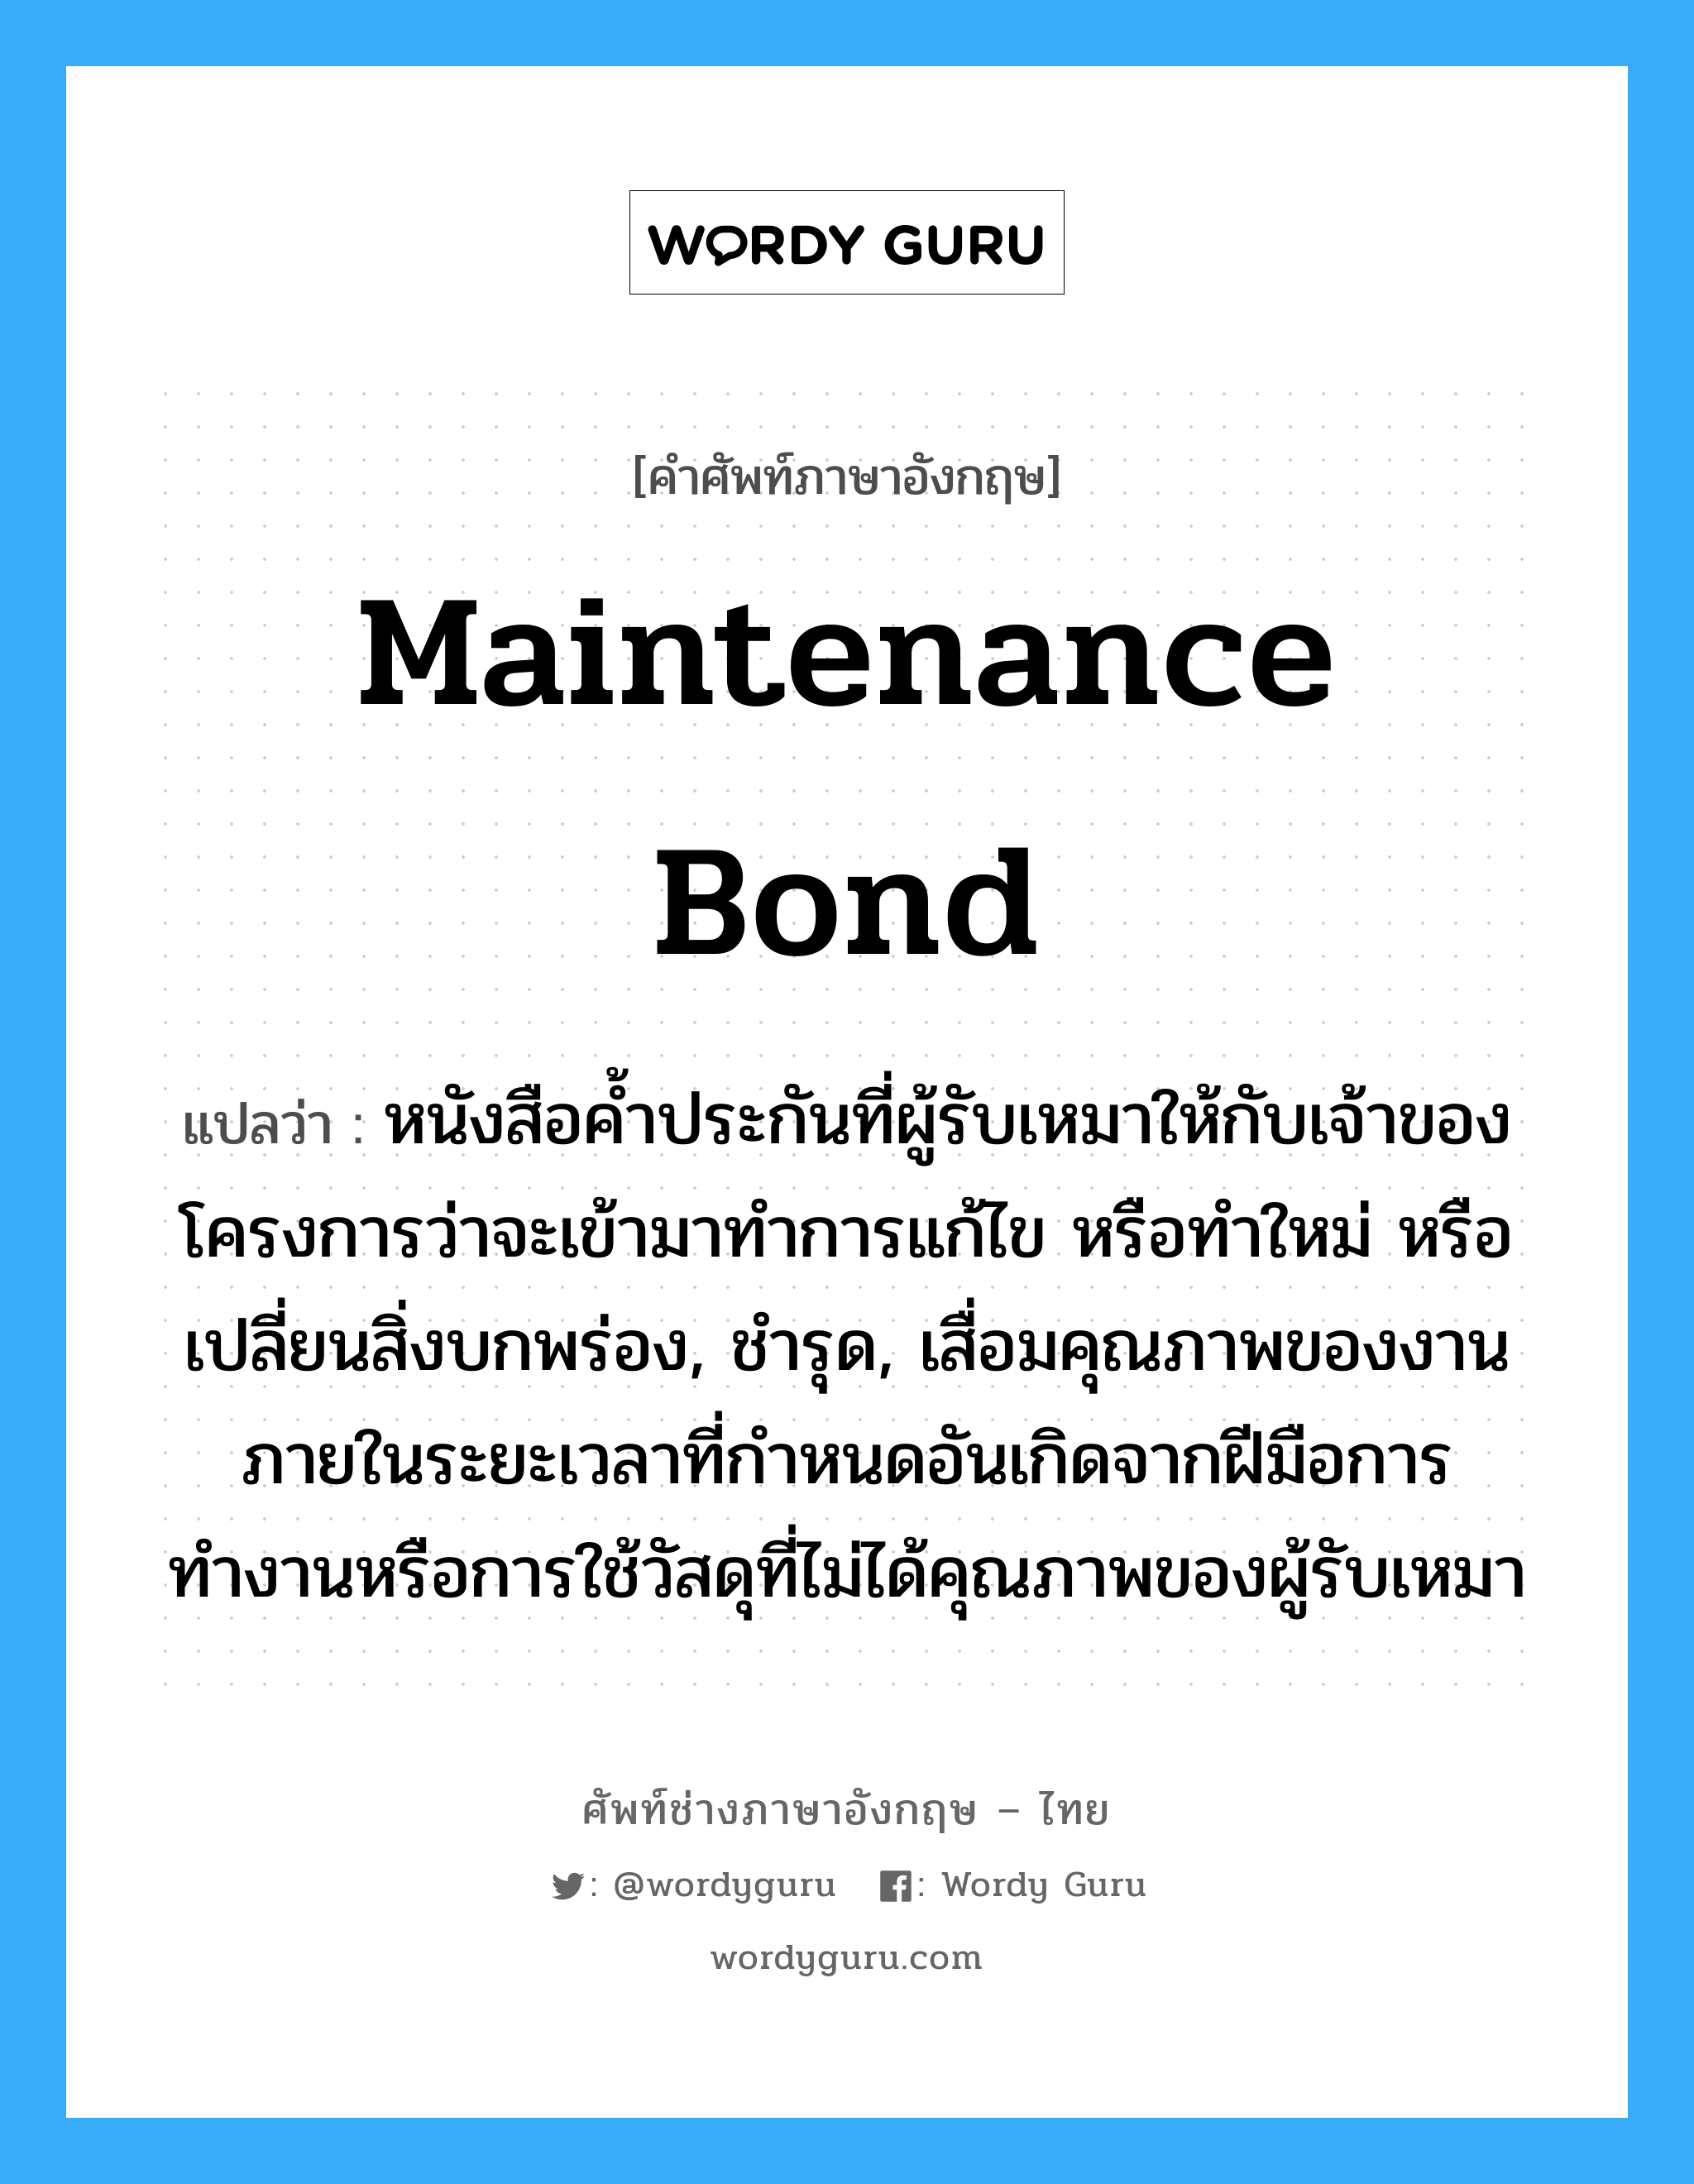 Maintenance Bond แปลว่า?, คำศัพท์ช่างภาษาอังกฤษ - ไทย Maintenance Bond คำศัพท์ภาษาอังกฤษ Maintenance Bond แปลว่า หนังสือค้ำประกันที่ผู้รับเหมาให้กับเจ้าของโครงการว่าจะเข้ามาทำการแก้ไข หรือทำใหม่ หรือเปลี่ยนสิ่งบกพร่อง, ชำรุด, เสื่อมคุณภาพของงานภายในระยะเวลาที่กำหนดอันเกิดจากฝีมือการทำงานหรือการใช้วัสดุที่ไม่ได้คุณภาพของผู้รับเหมา